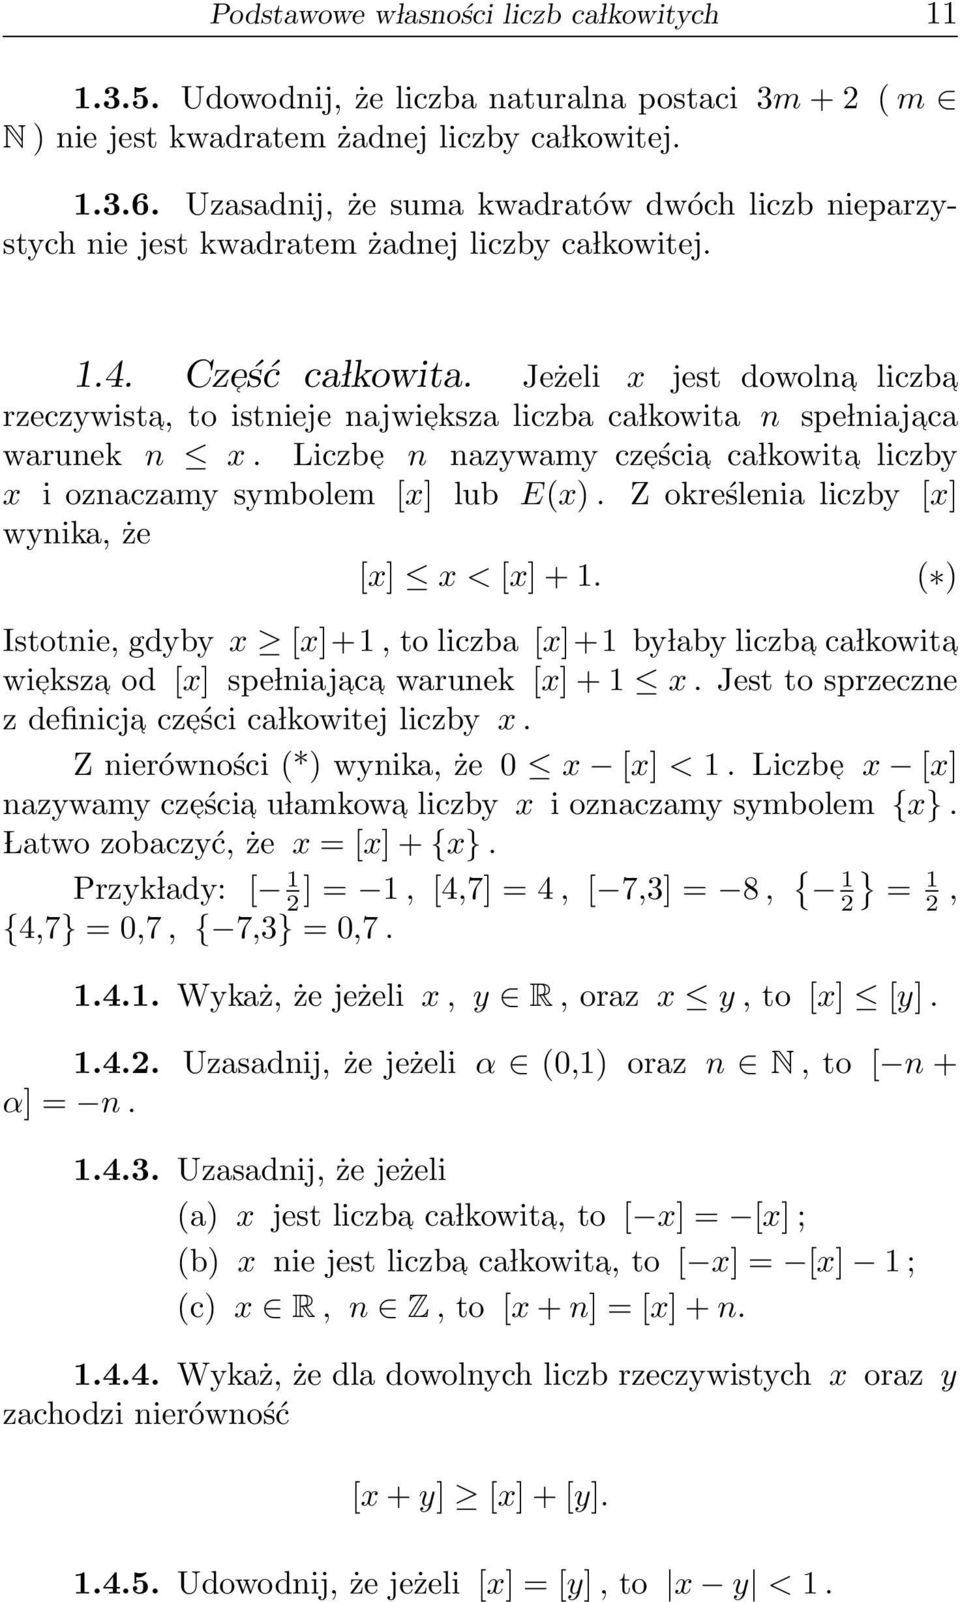 Jeżeli x jest dowolna liczba rzeczywista, to istnieje najwie ksza liczba ca lkowita n spe lniaja ca warunek n x. Liczbe n nazywamy cze ścia ca lkowita liczby x i oznaczamy symbolem [x] lub E(x).